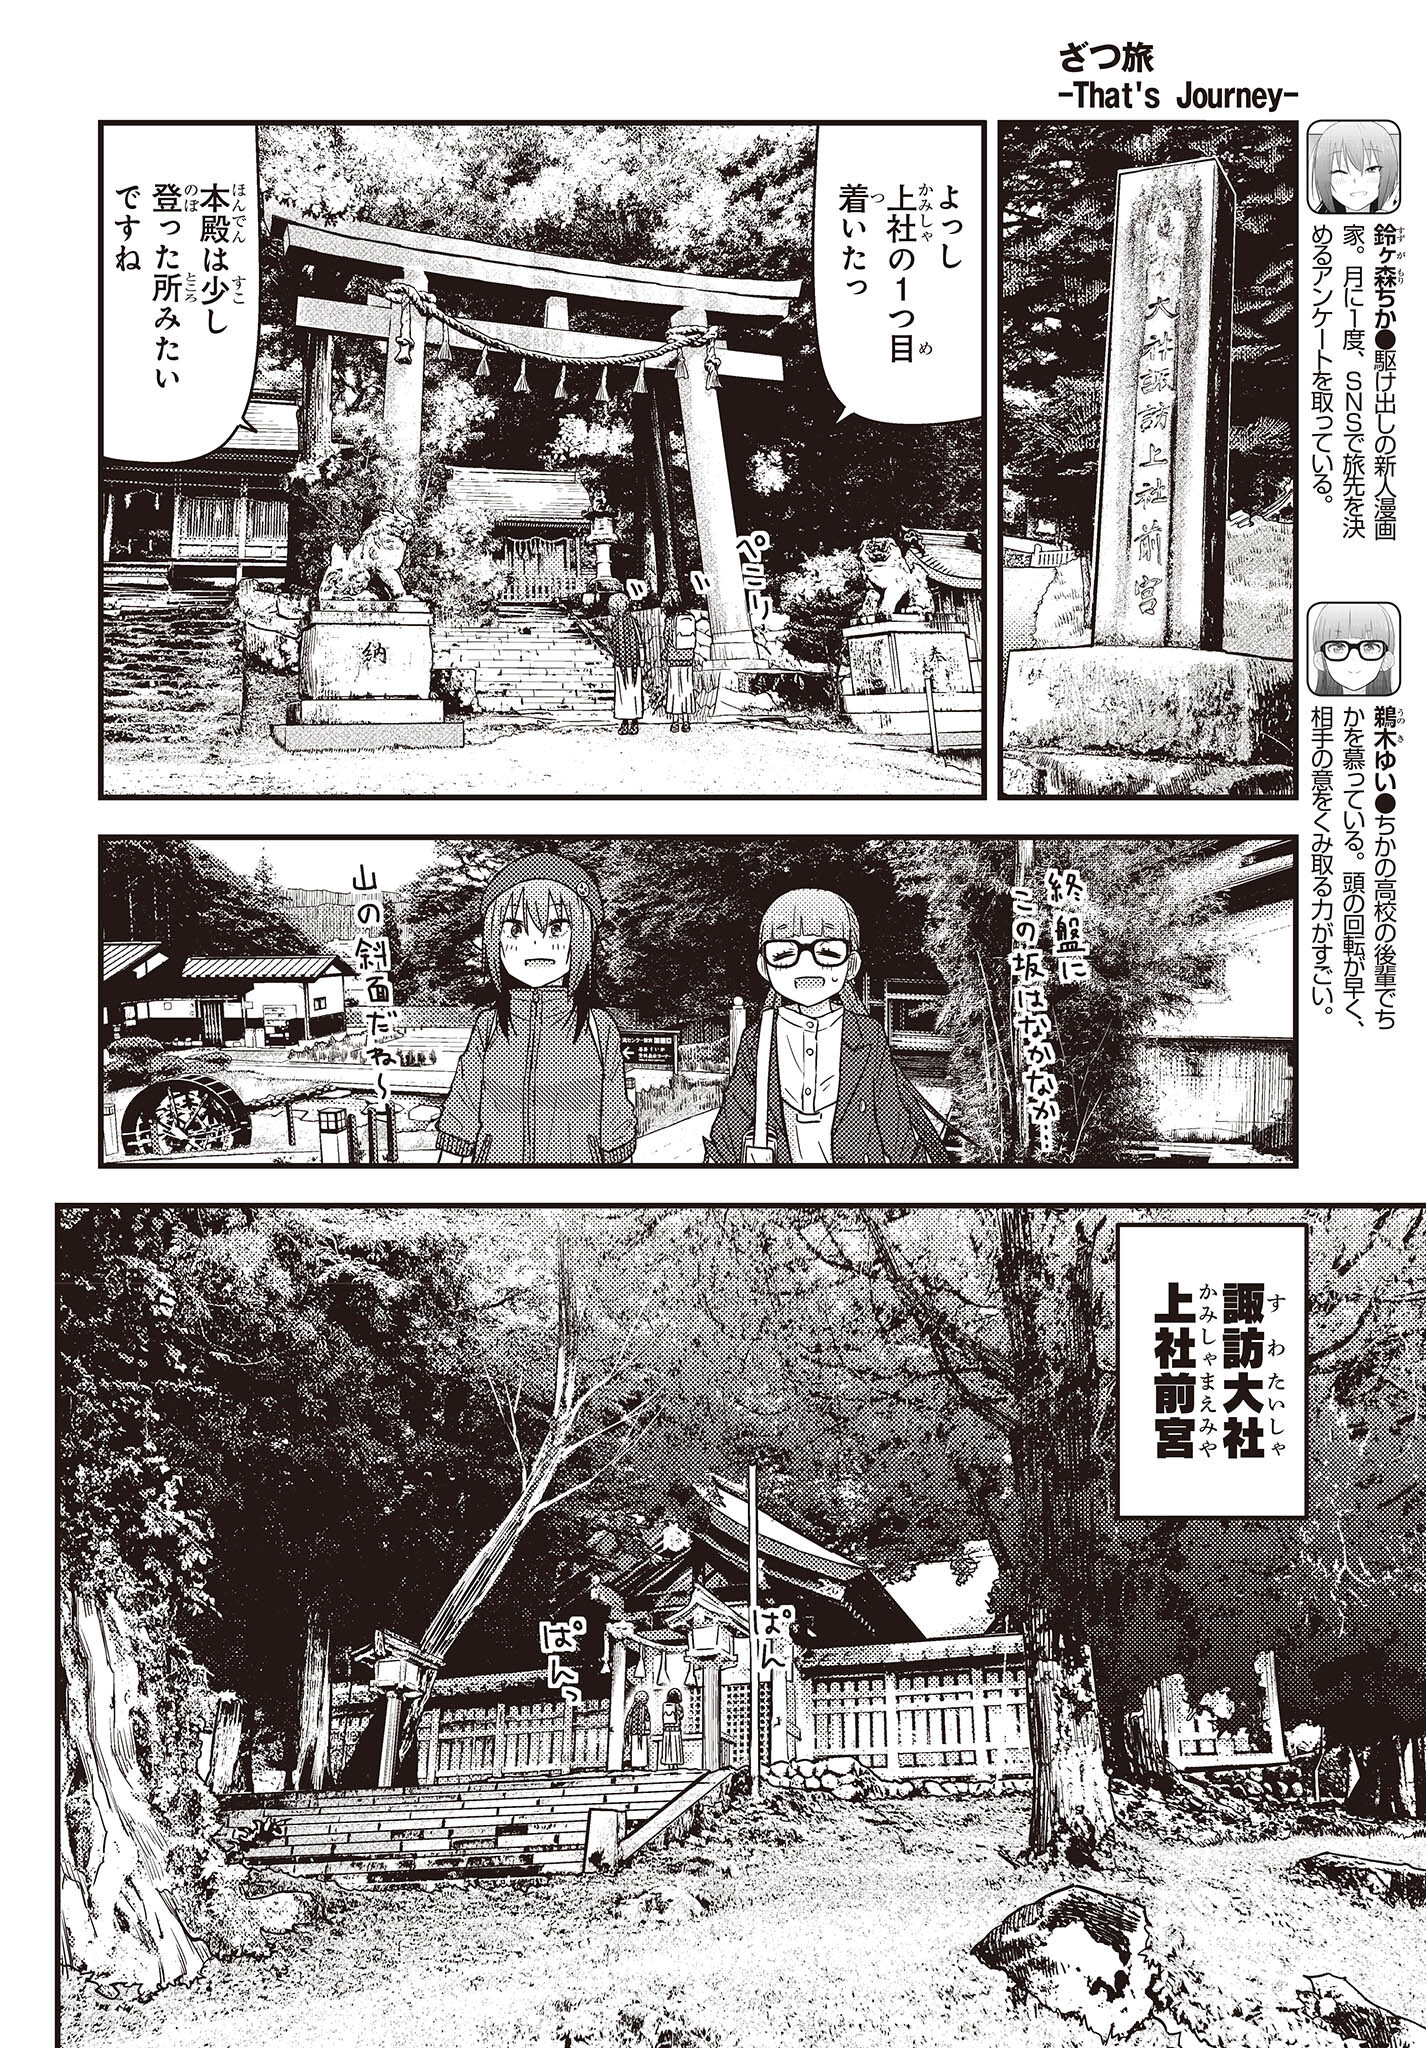 ざつ旅-That’s Journey- 第28.2話 - Page 6